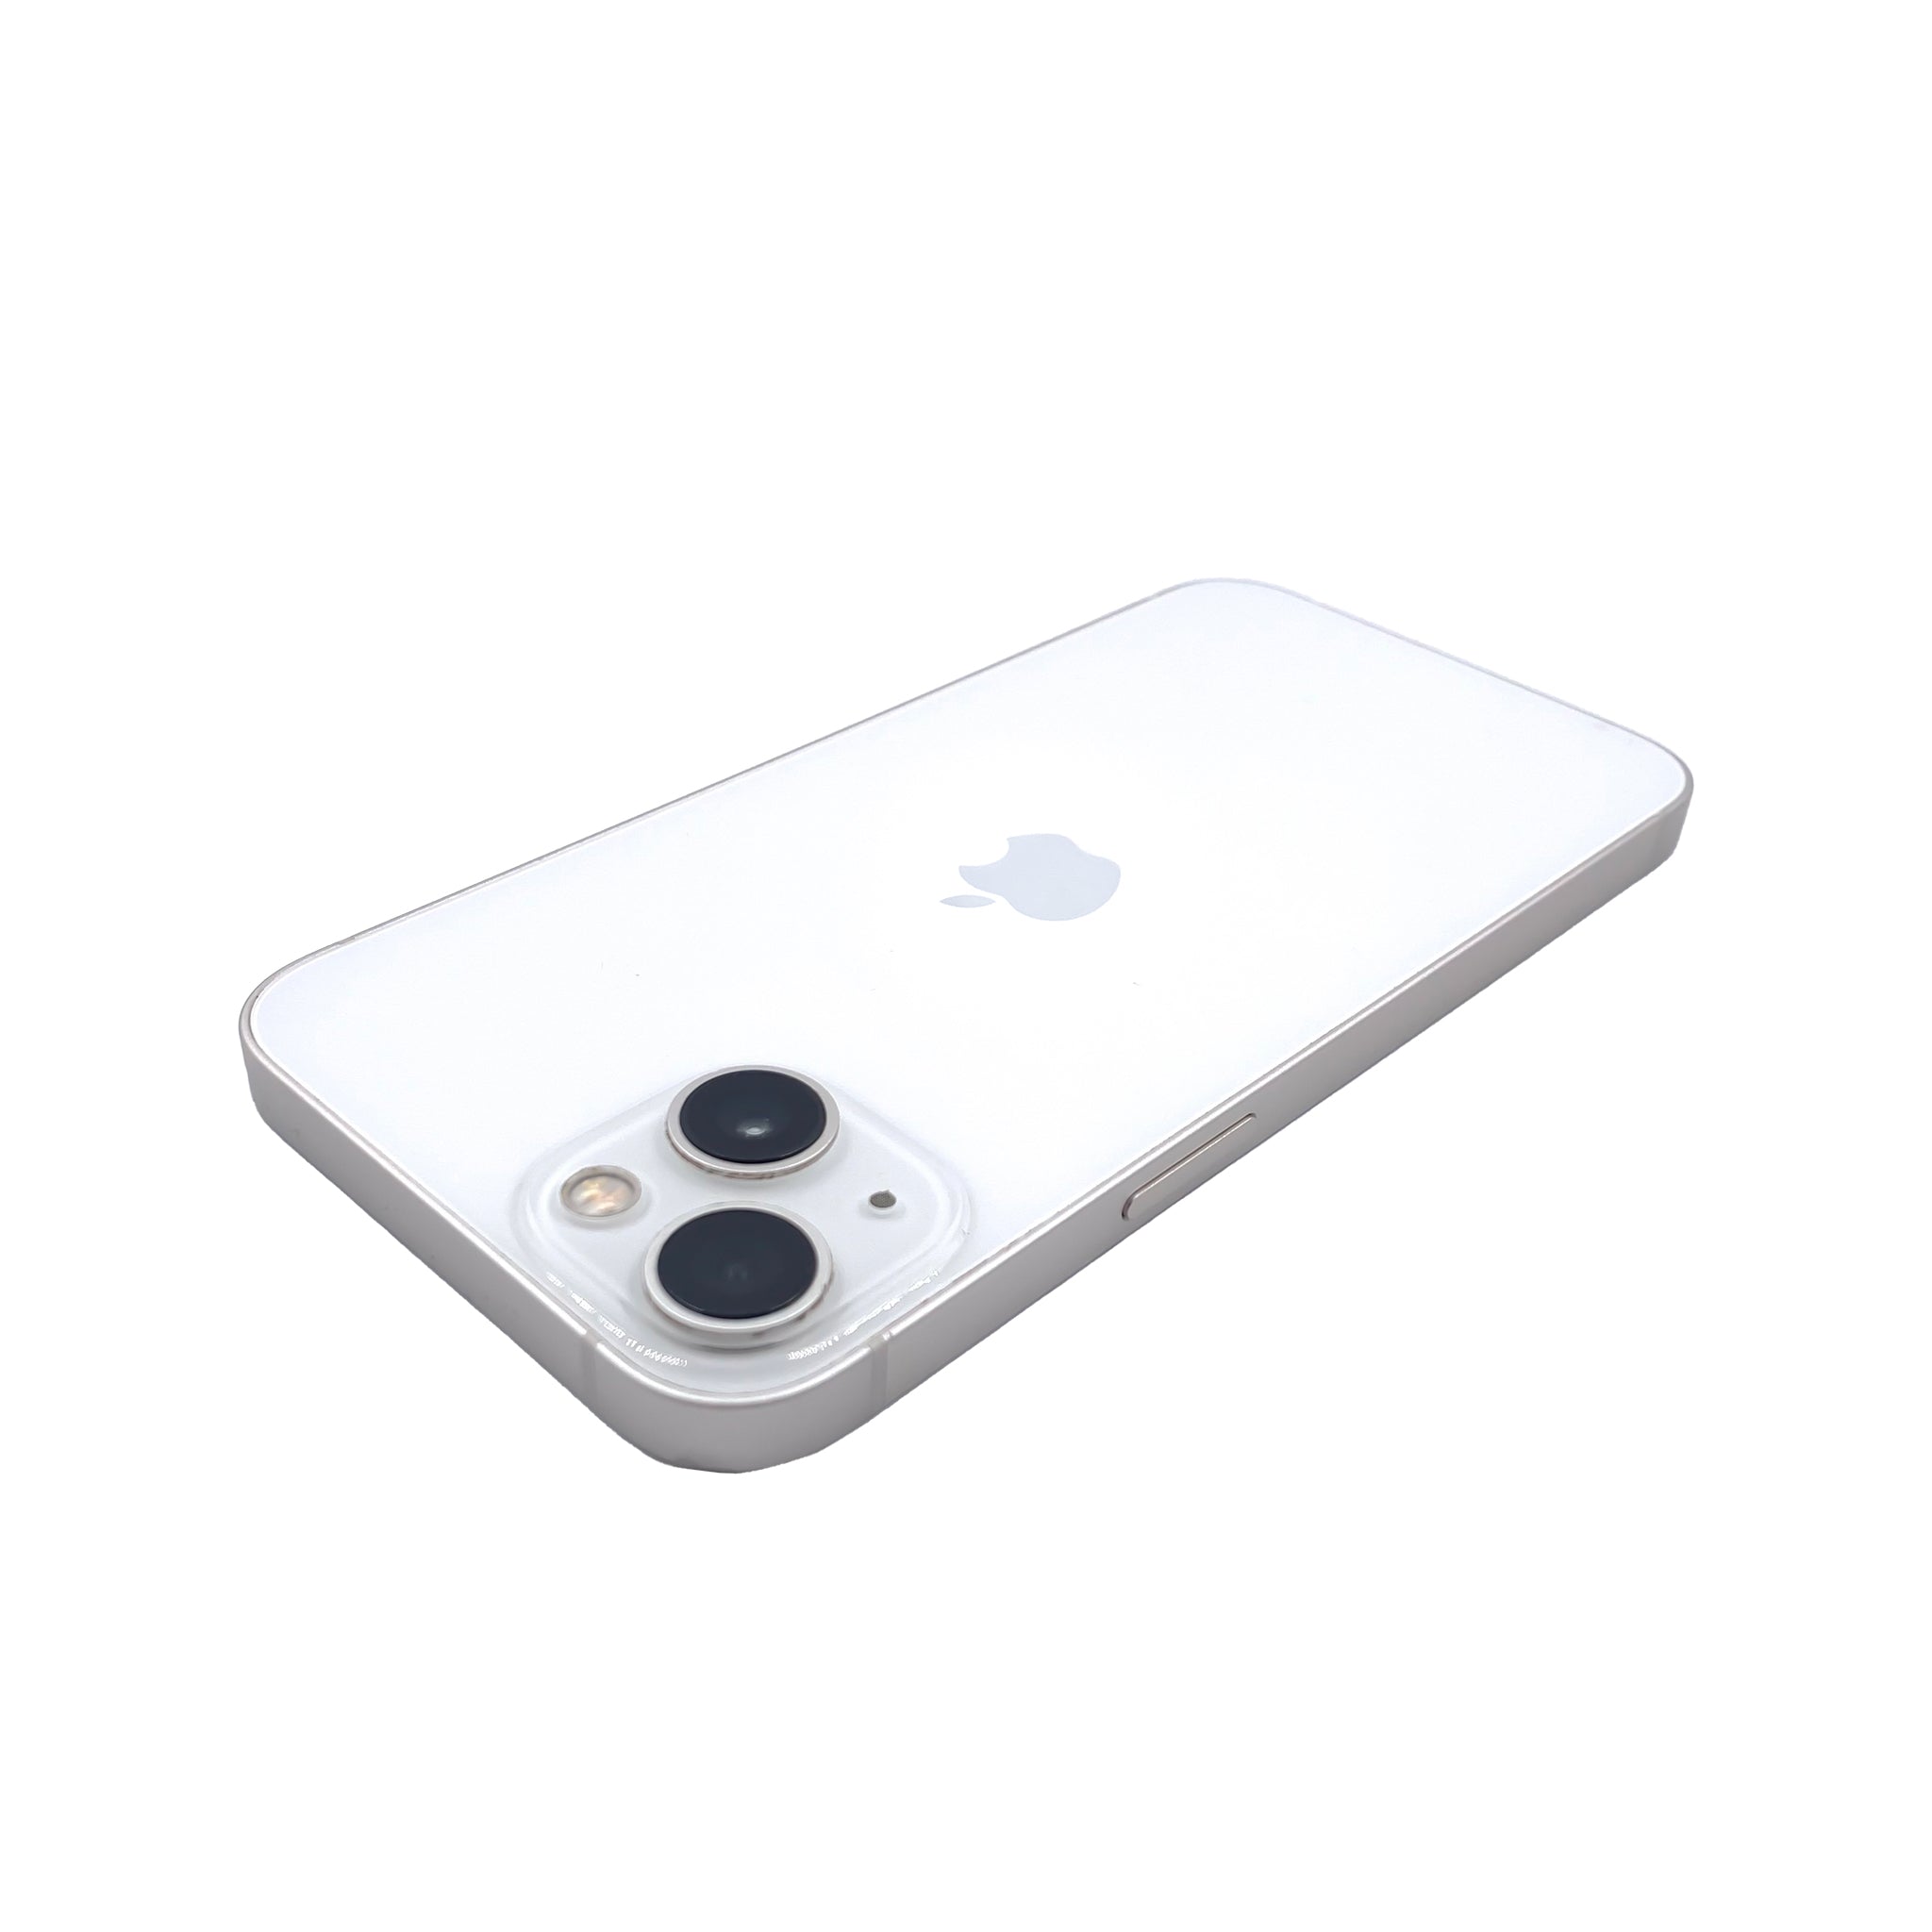 Consigue el iPhone 13 desde 800 euros y otros modelos anteriores (también  reacondicionados) a precios bajos, Escaparate: compras y ofertas